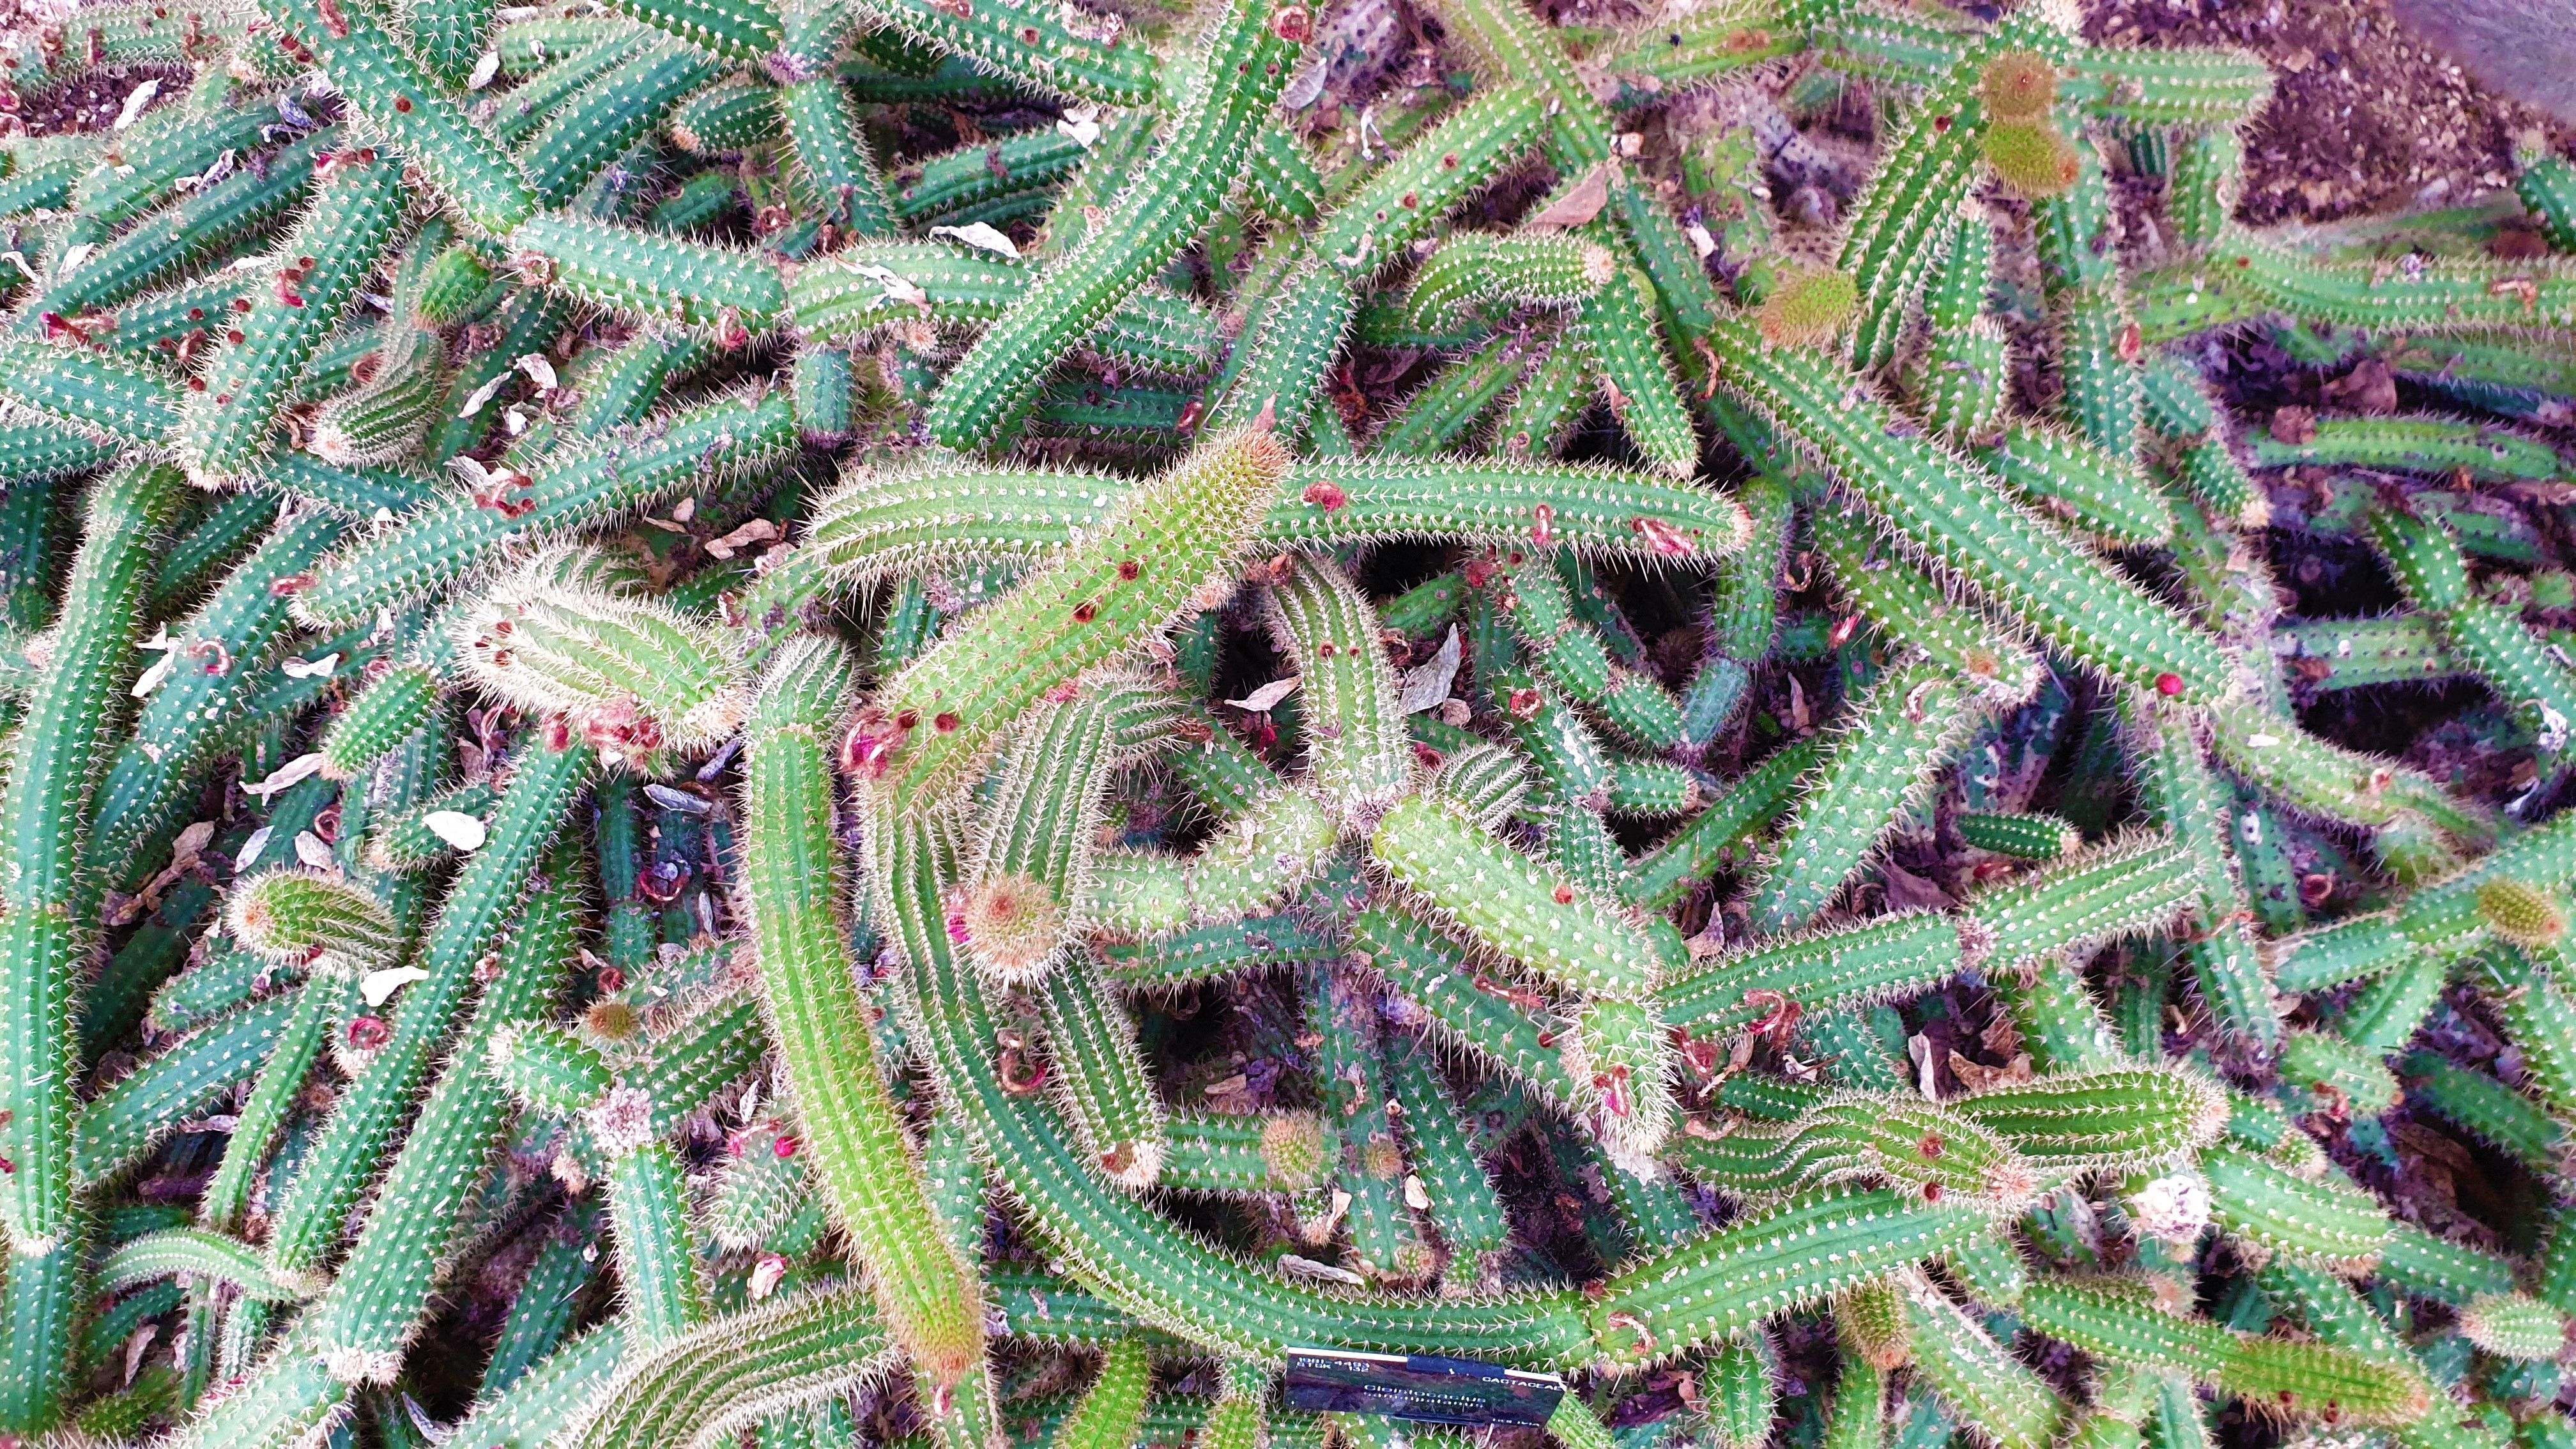 Close up of snake-like cacti, Cleistocactus samaipatanus